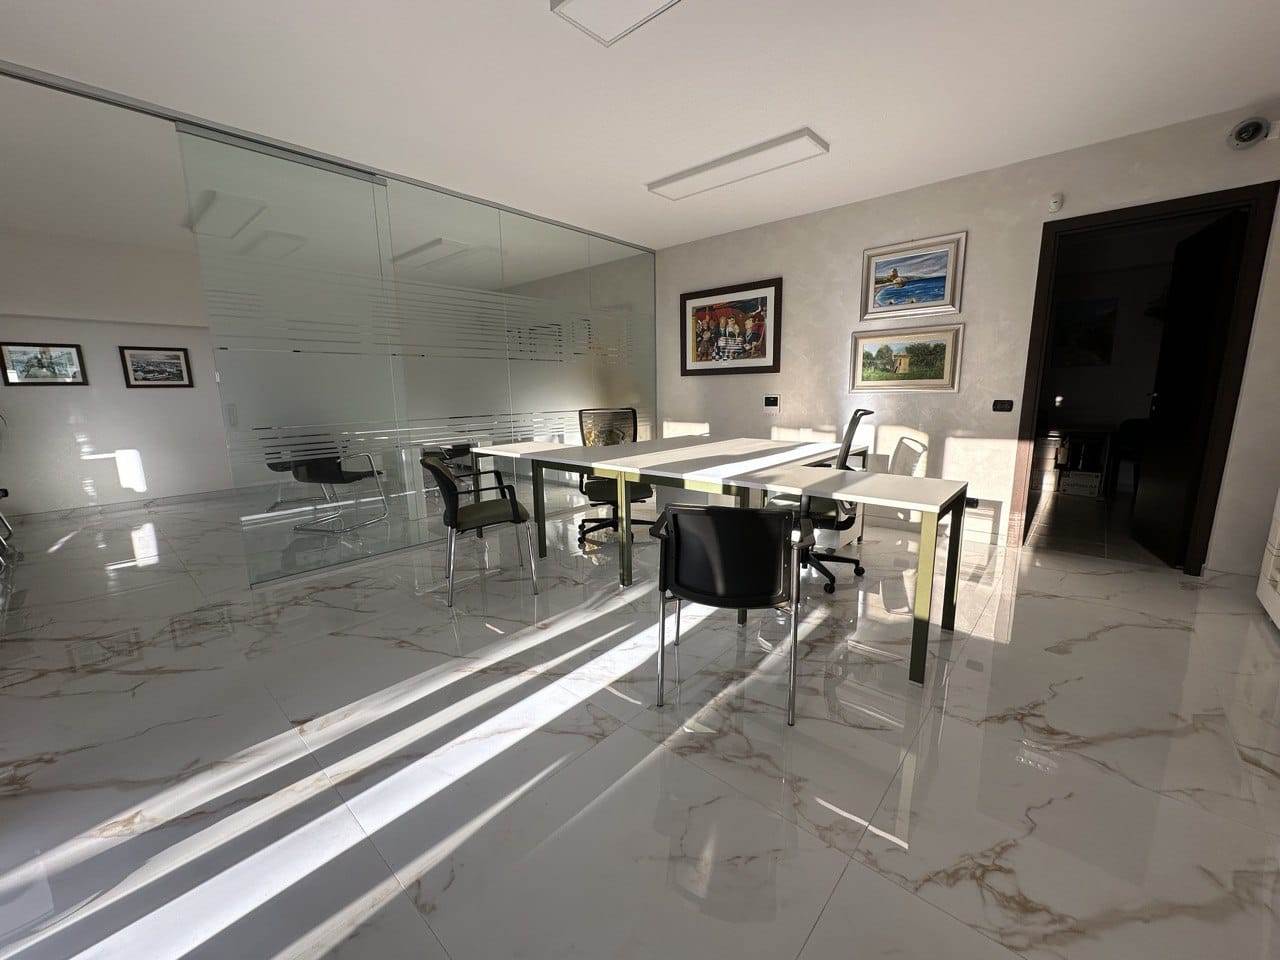 Ufficio / Studio in vendita a Altamura, 2 locali, prezzo € 100.000 | PortaleAgenzieImmobiliari.it